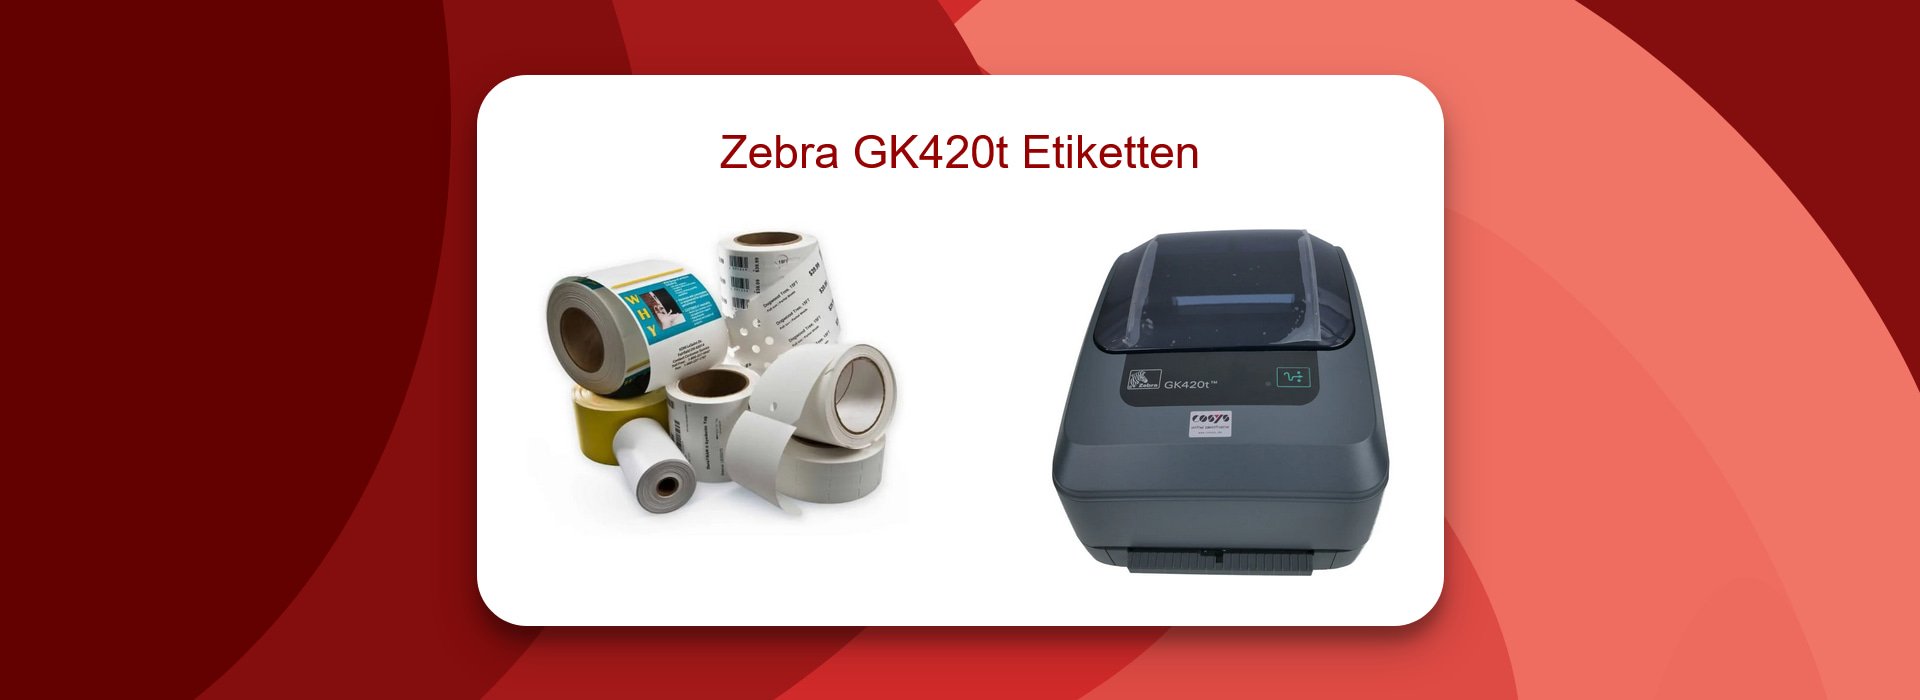 Zebra GK420t Etiketten für mehr Effizienz